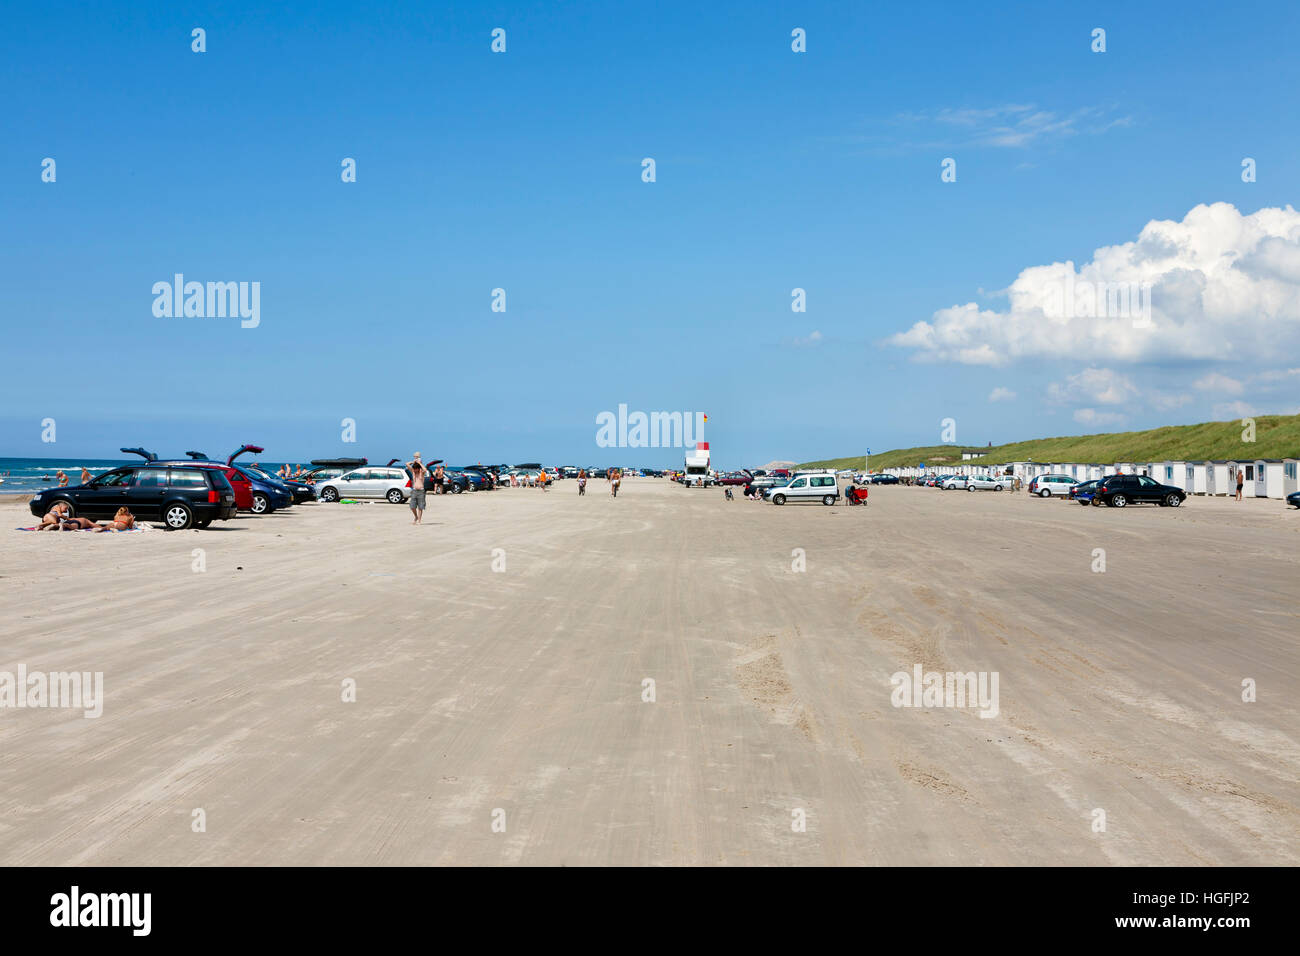 La famosa spiaggia di Blokhus nella parte nord-occidentale dello Jutland, Danimarca. Le automobili e i veicoli sono ammessi su questa spiaggia danese Foto Stock